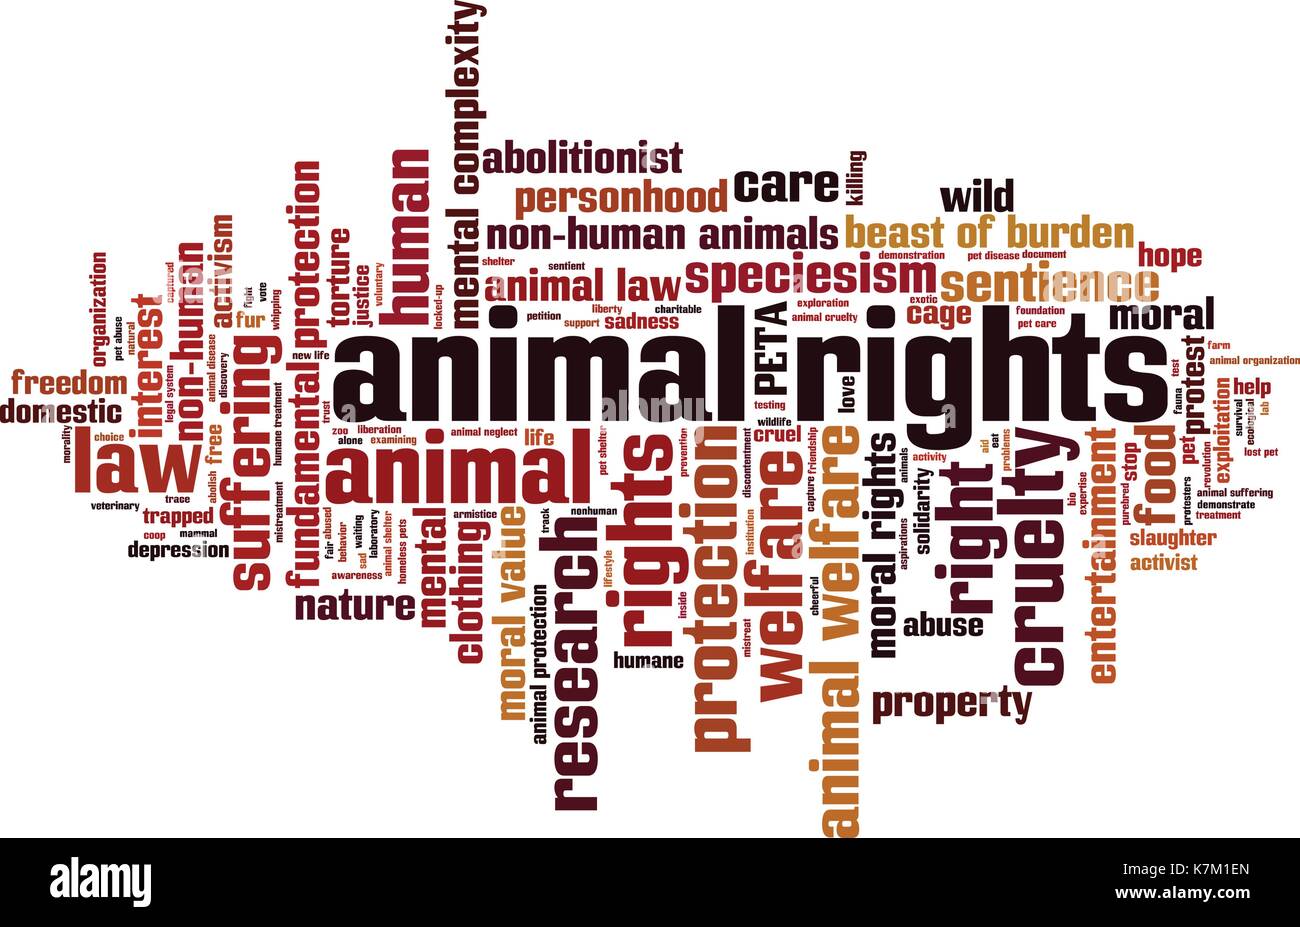 Die Rechte der Tiere Wort cloud Konzept. Vector Illustration Stock Vektor